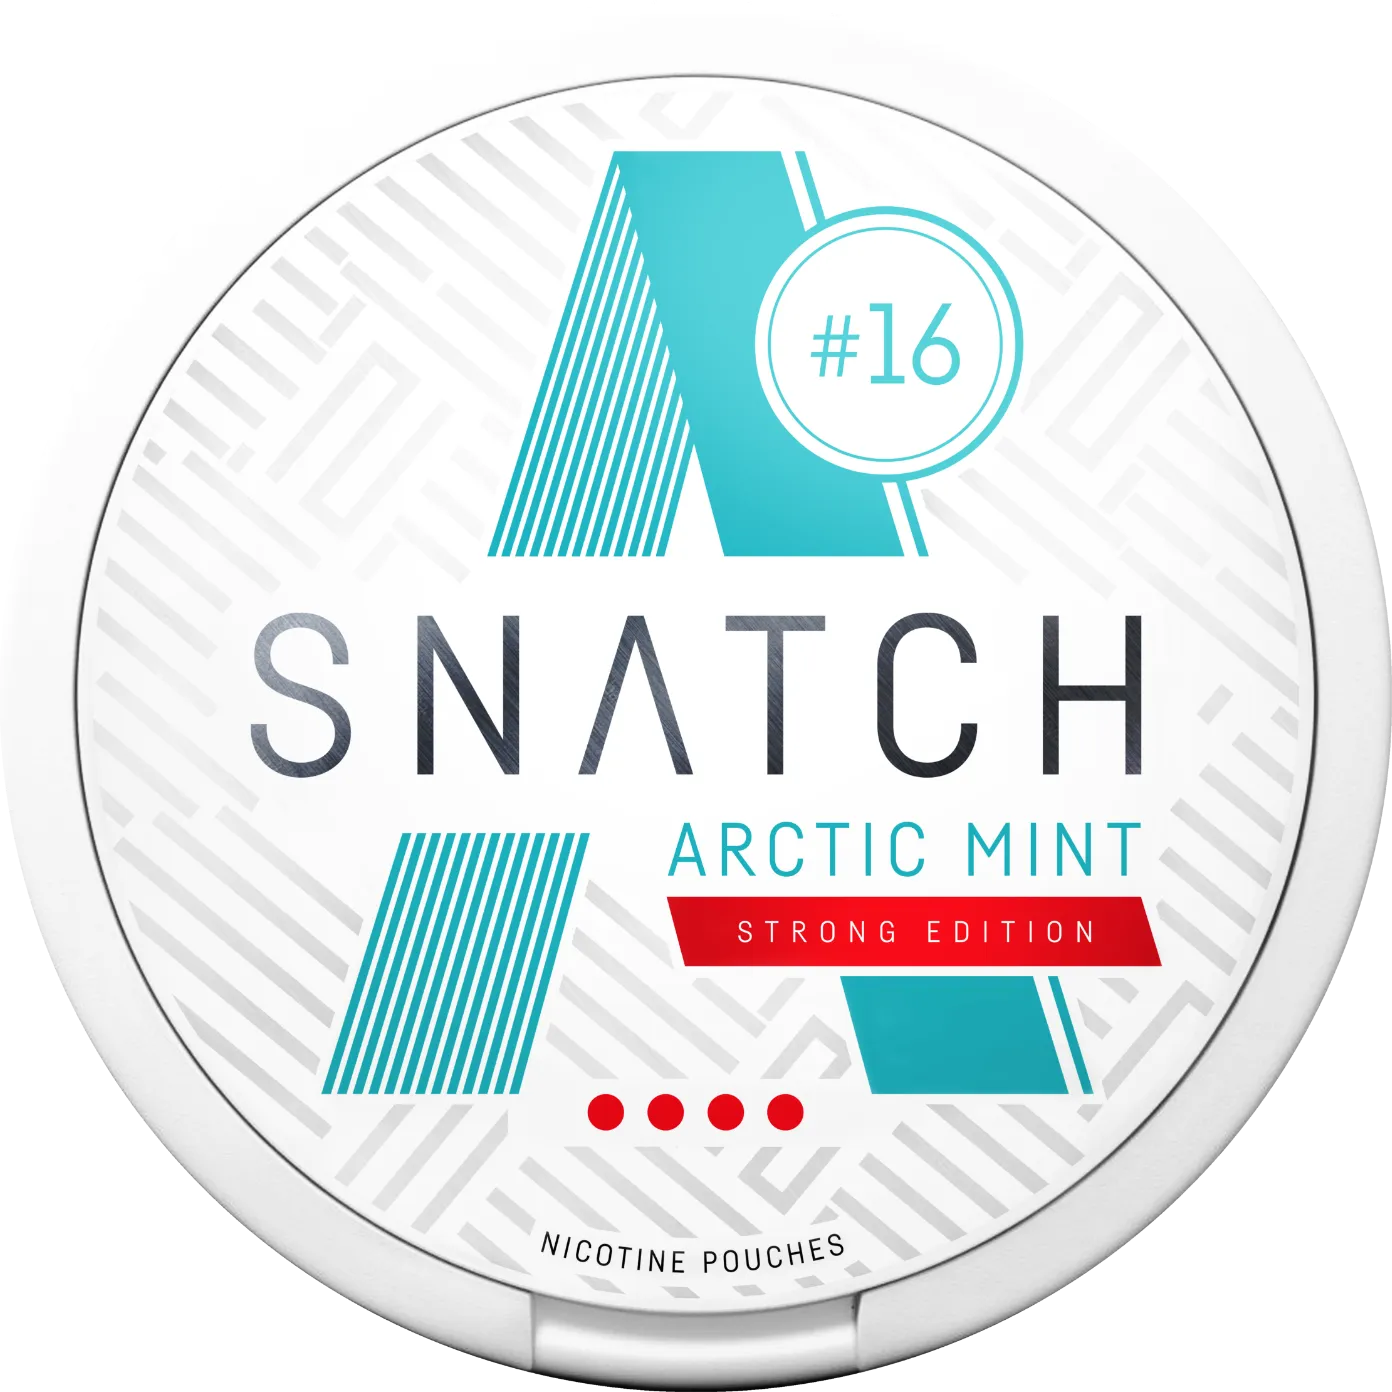 Snatch Arctic Mint